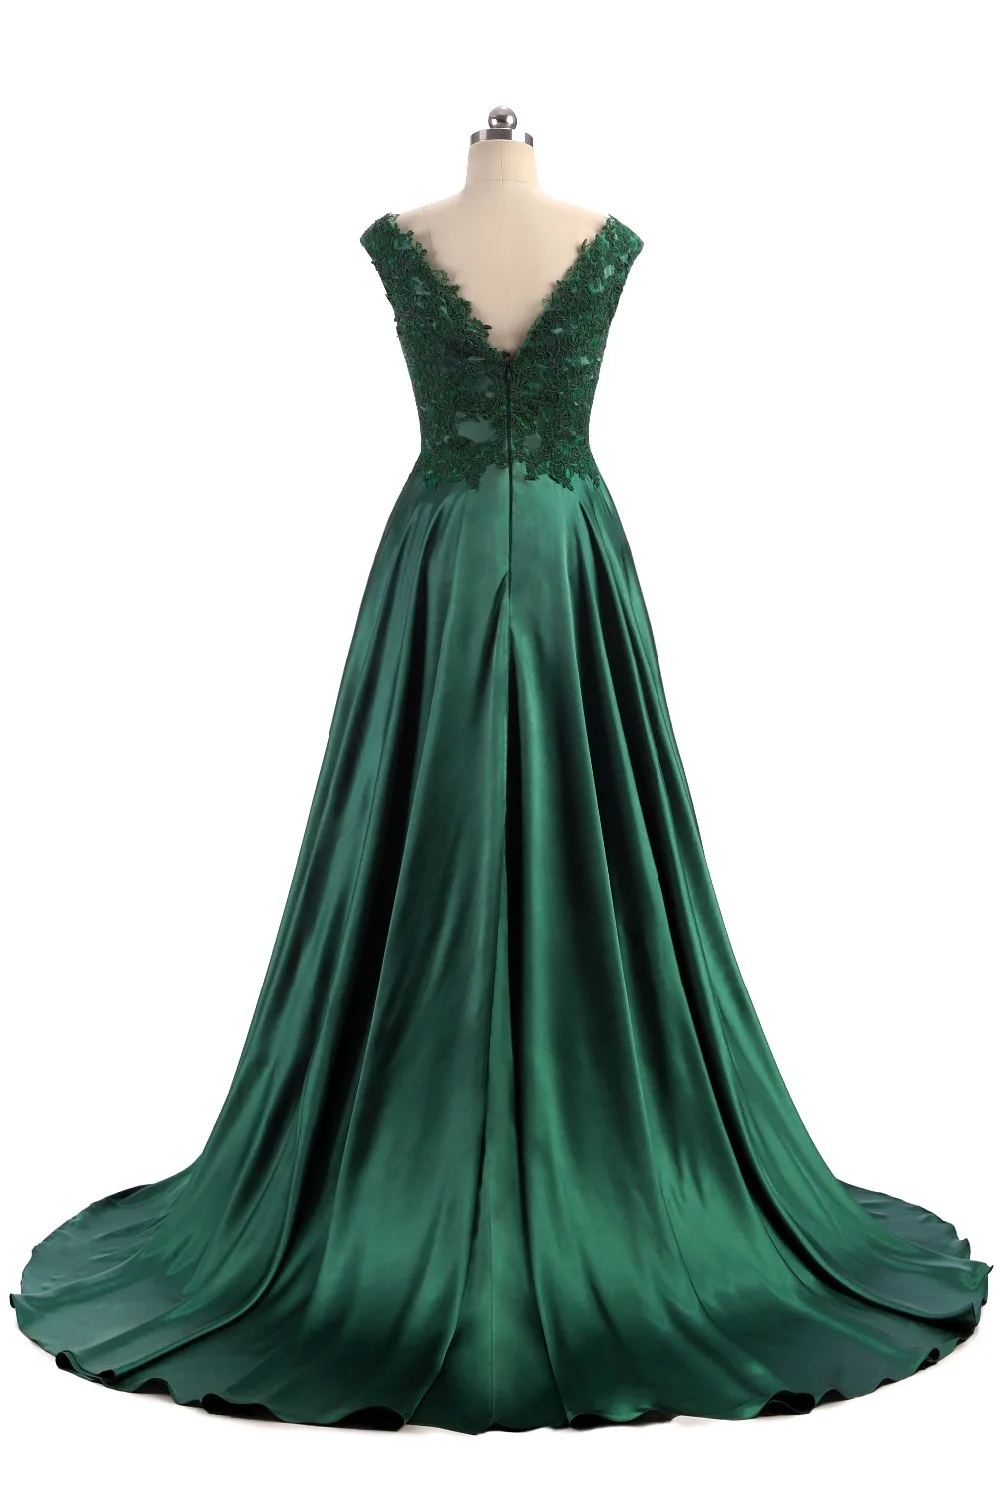 Robe De Soiree Elie Saab, вечернее платье,, длинное, темно-зеленое, с рукавами-крылышками, атласное, Vestidos De Noite Para Casamento